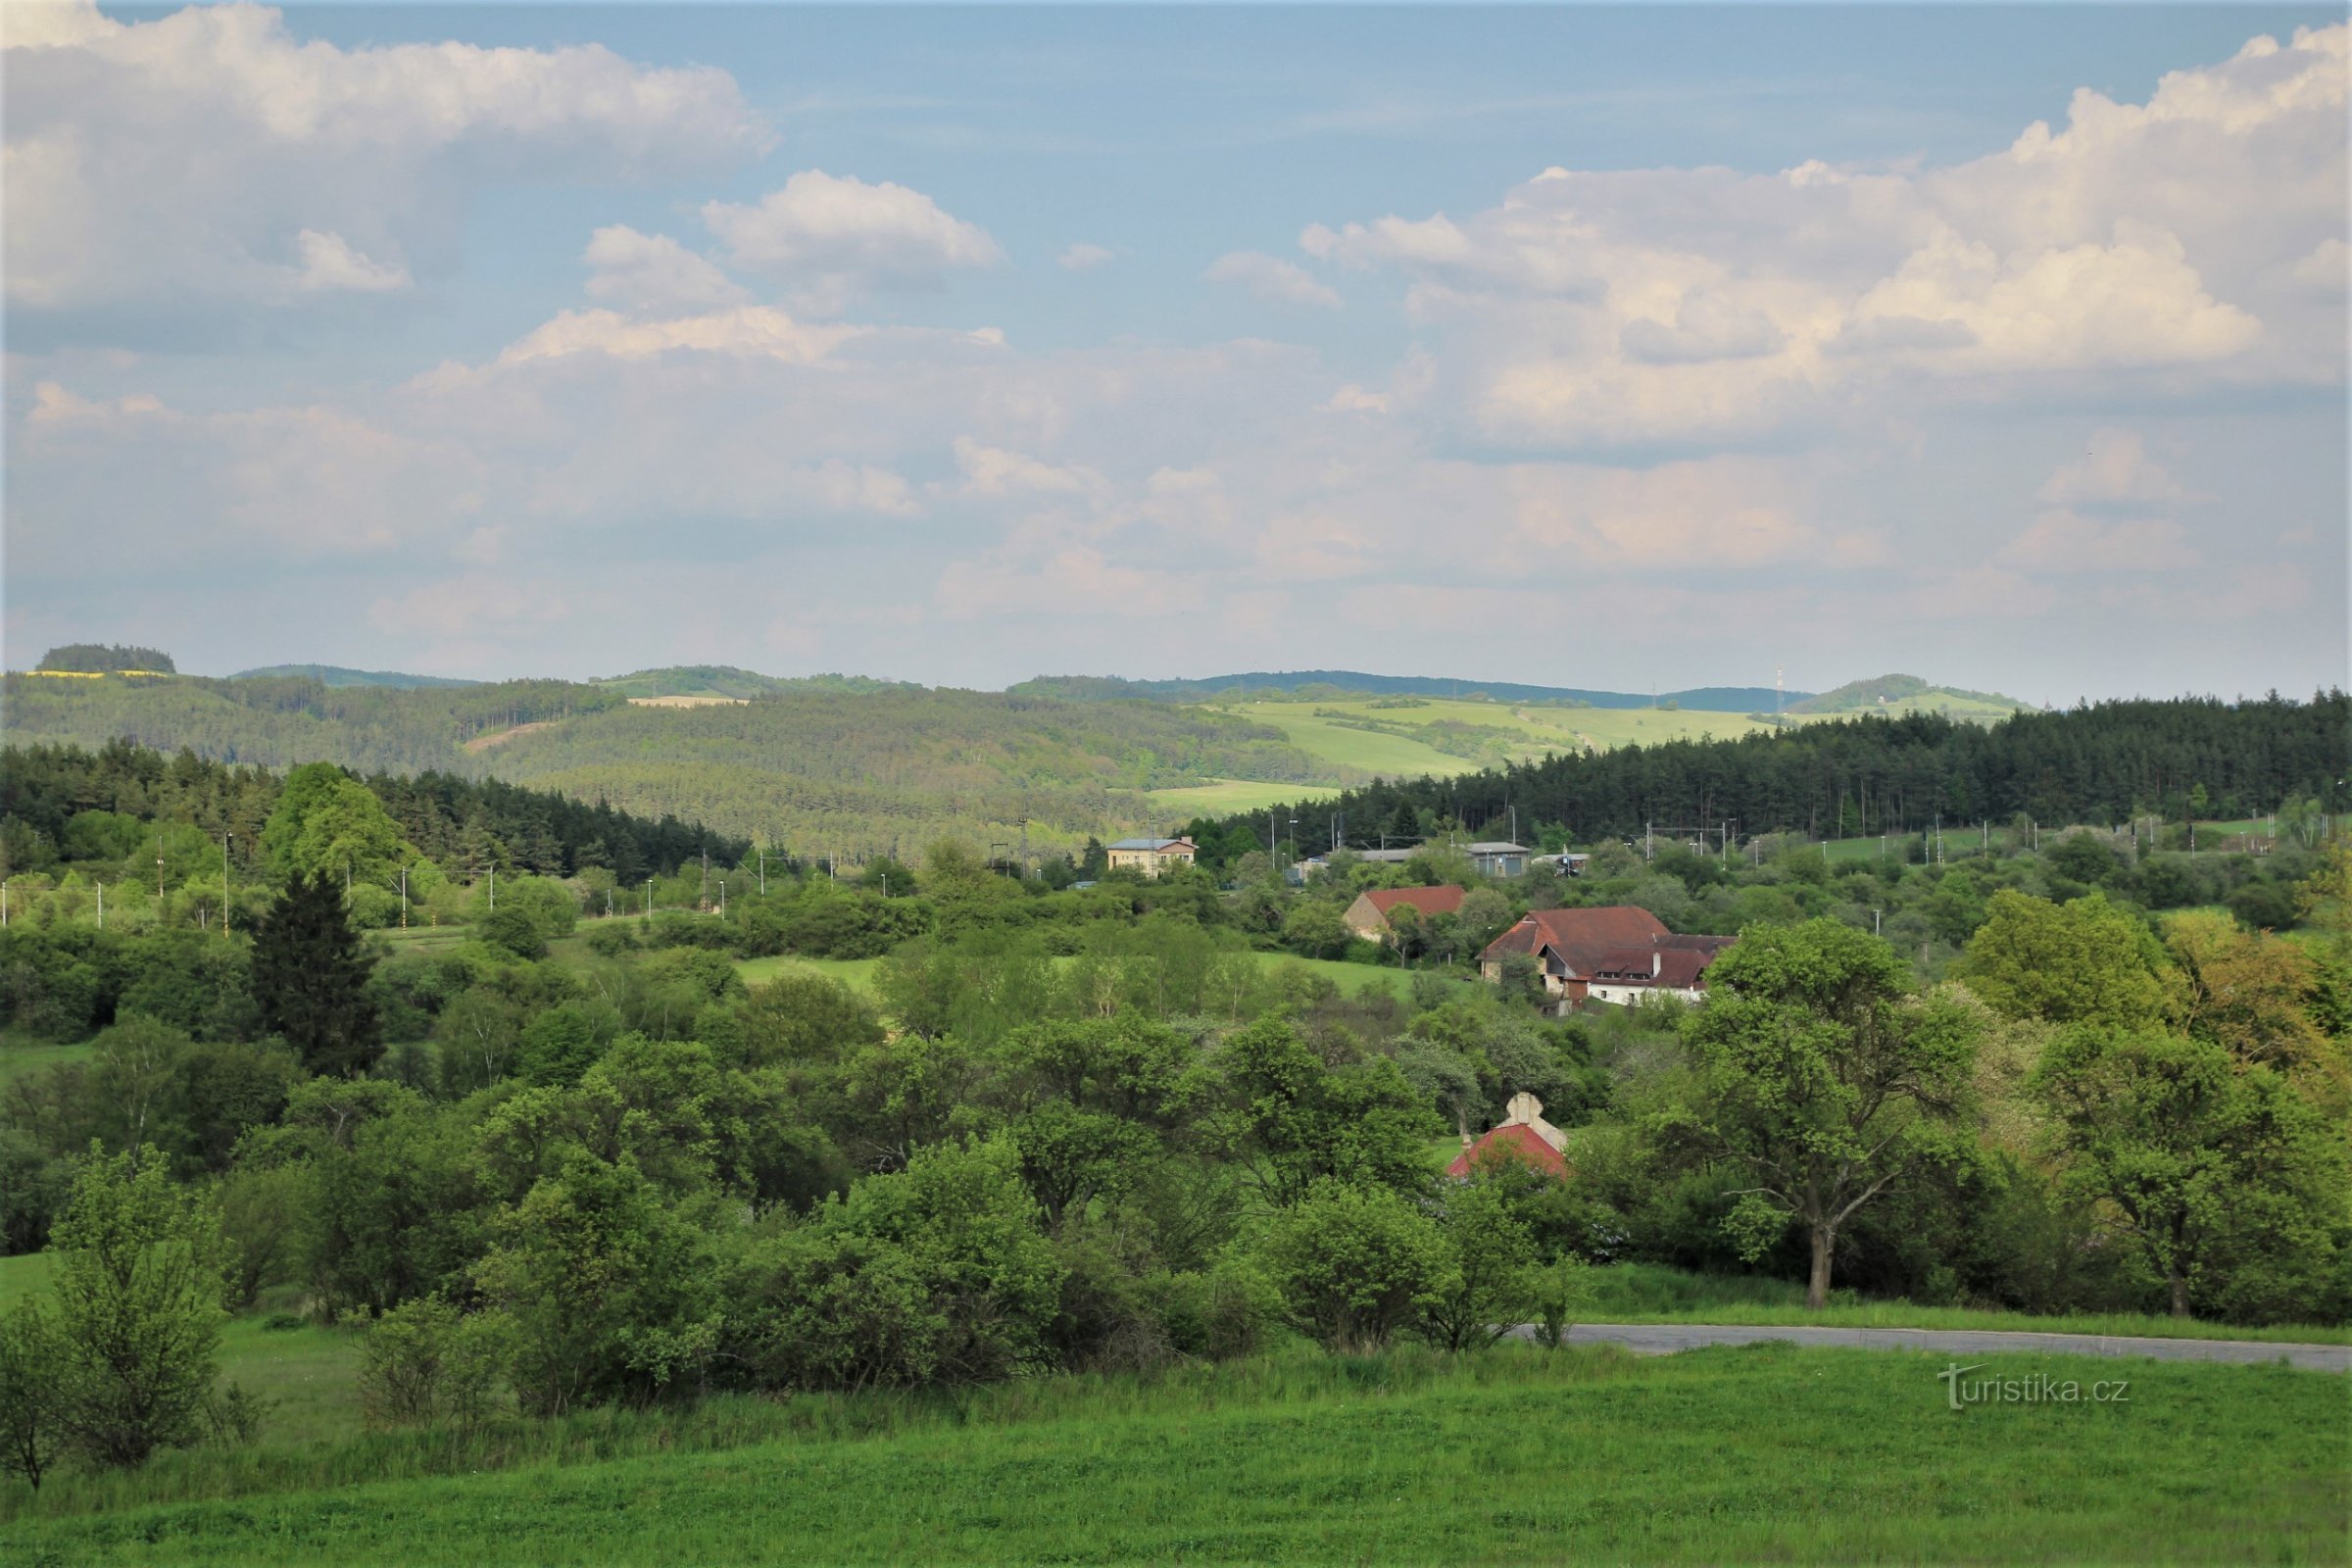 General view of Řikoninsko